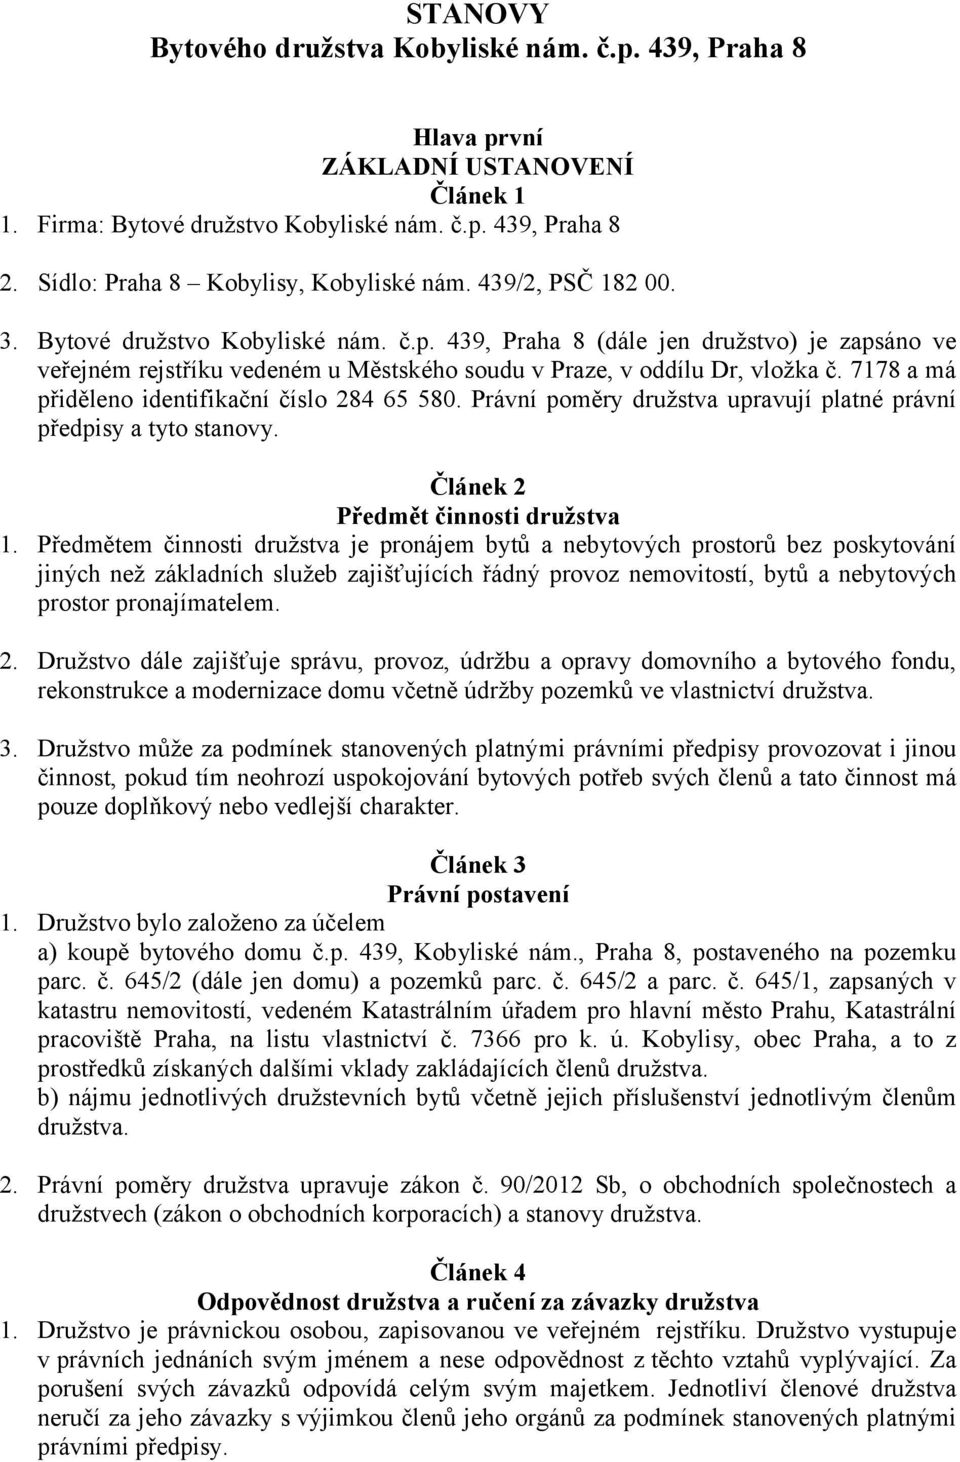 439, Praha 8 (dále jen družstvo) je zapsáno ve veřejném rejstříku vedeném u Městského soudu v Praze, v oddílu Dr, vložka č. 7178 a má přiděleno identifikační číslo 284 65 580.